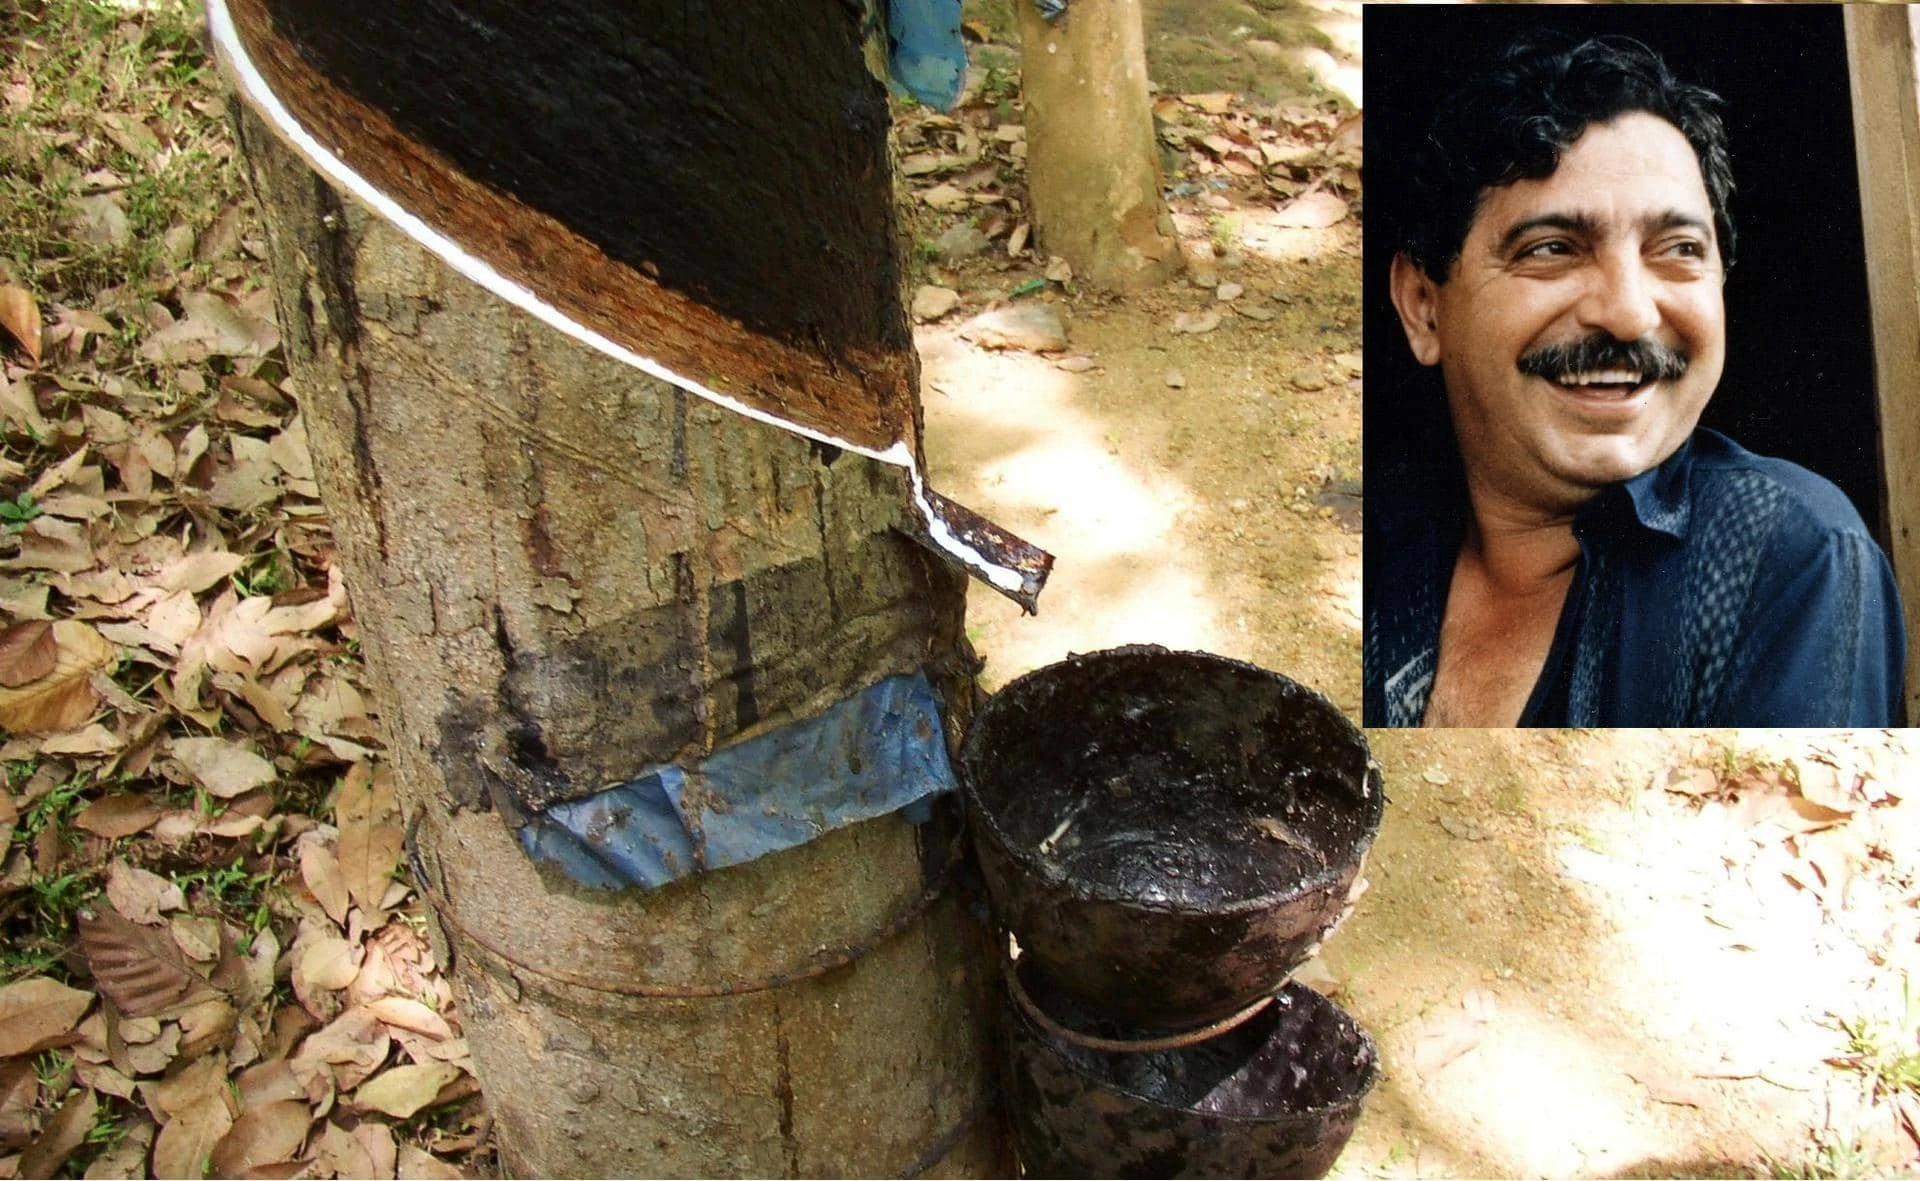 Ein Portraitbild von Chico Mendes und das Bild von einem Baum aus dem Kautschuk tropft.